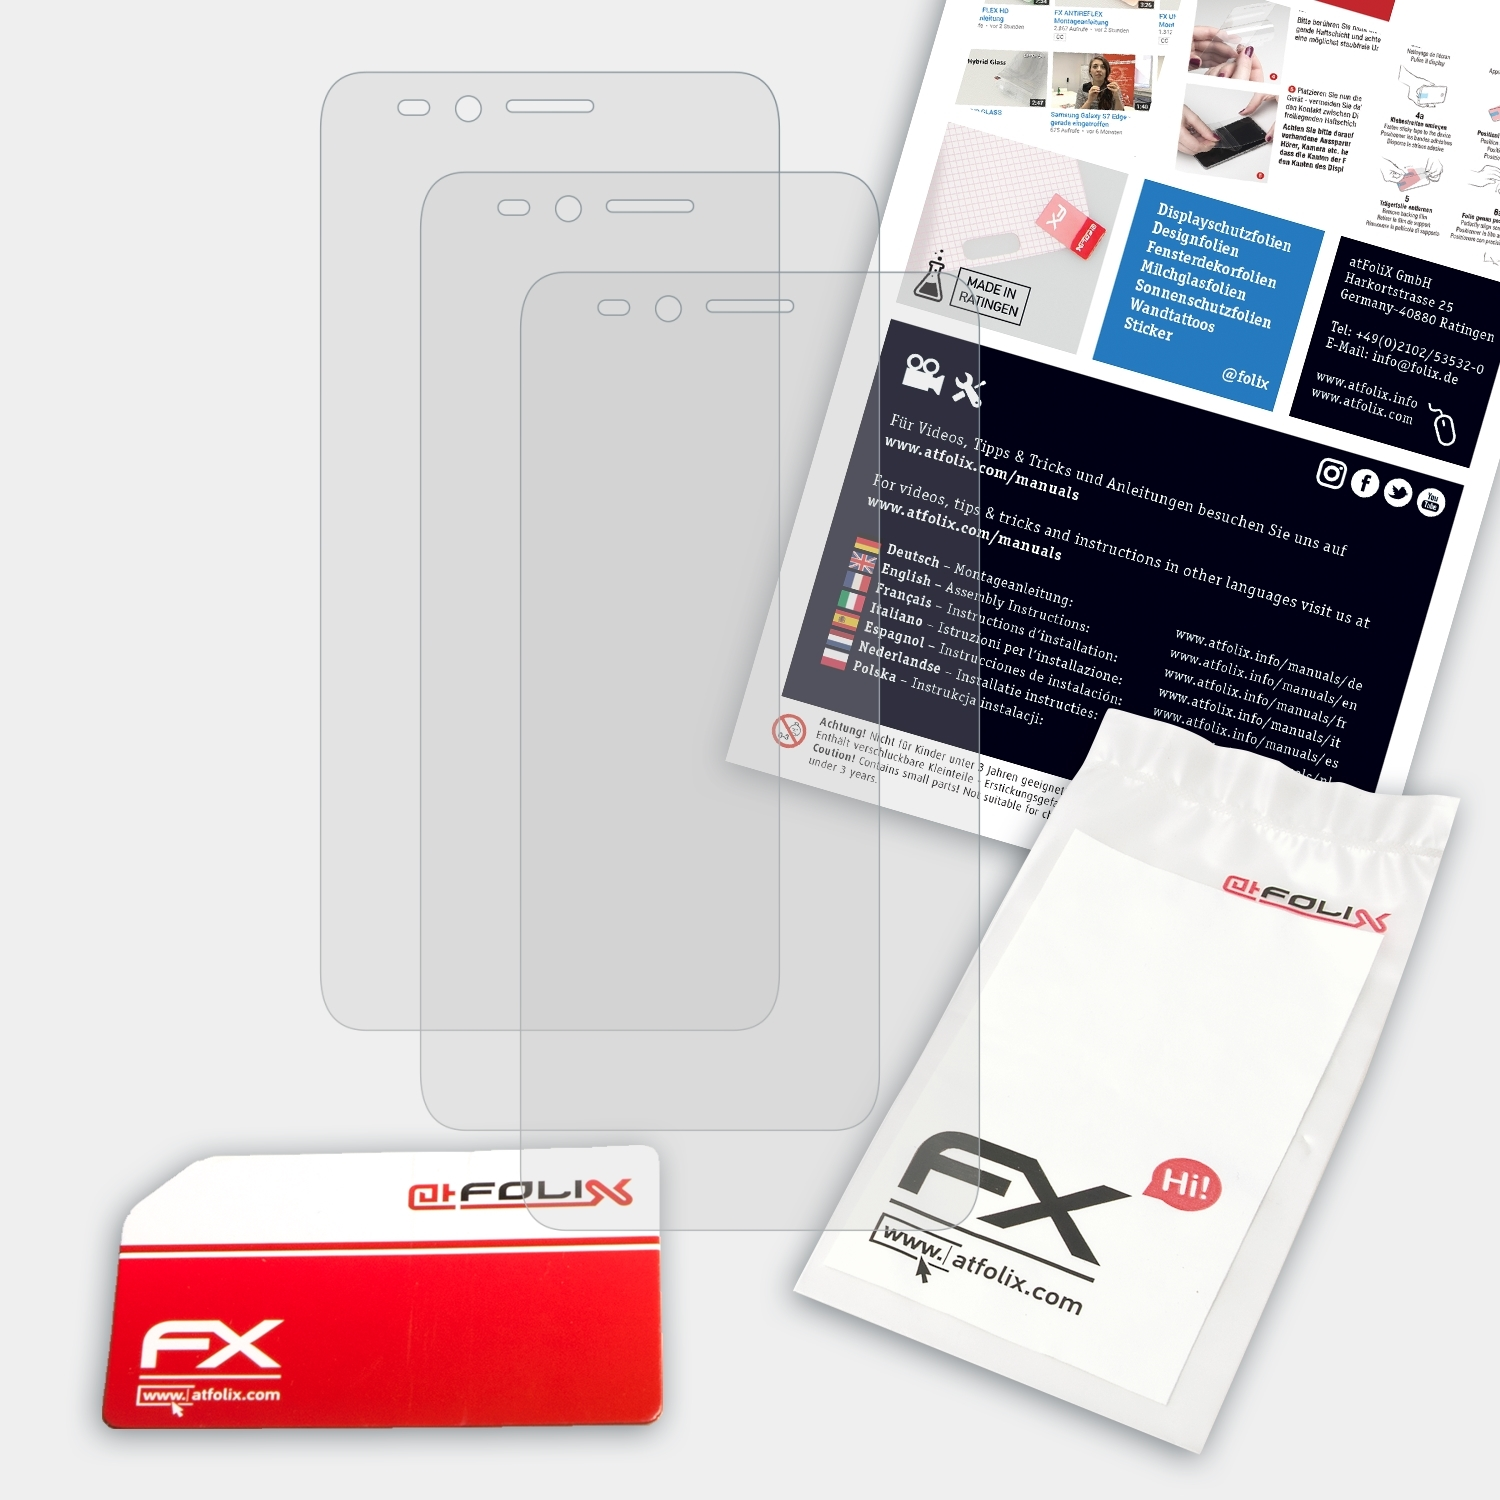 ATFOLIX 3x Honor 2) Displayschutz(für FX-Antireflex Bee Huawei